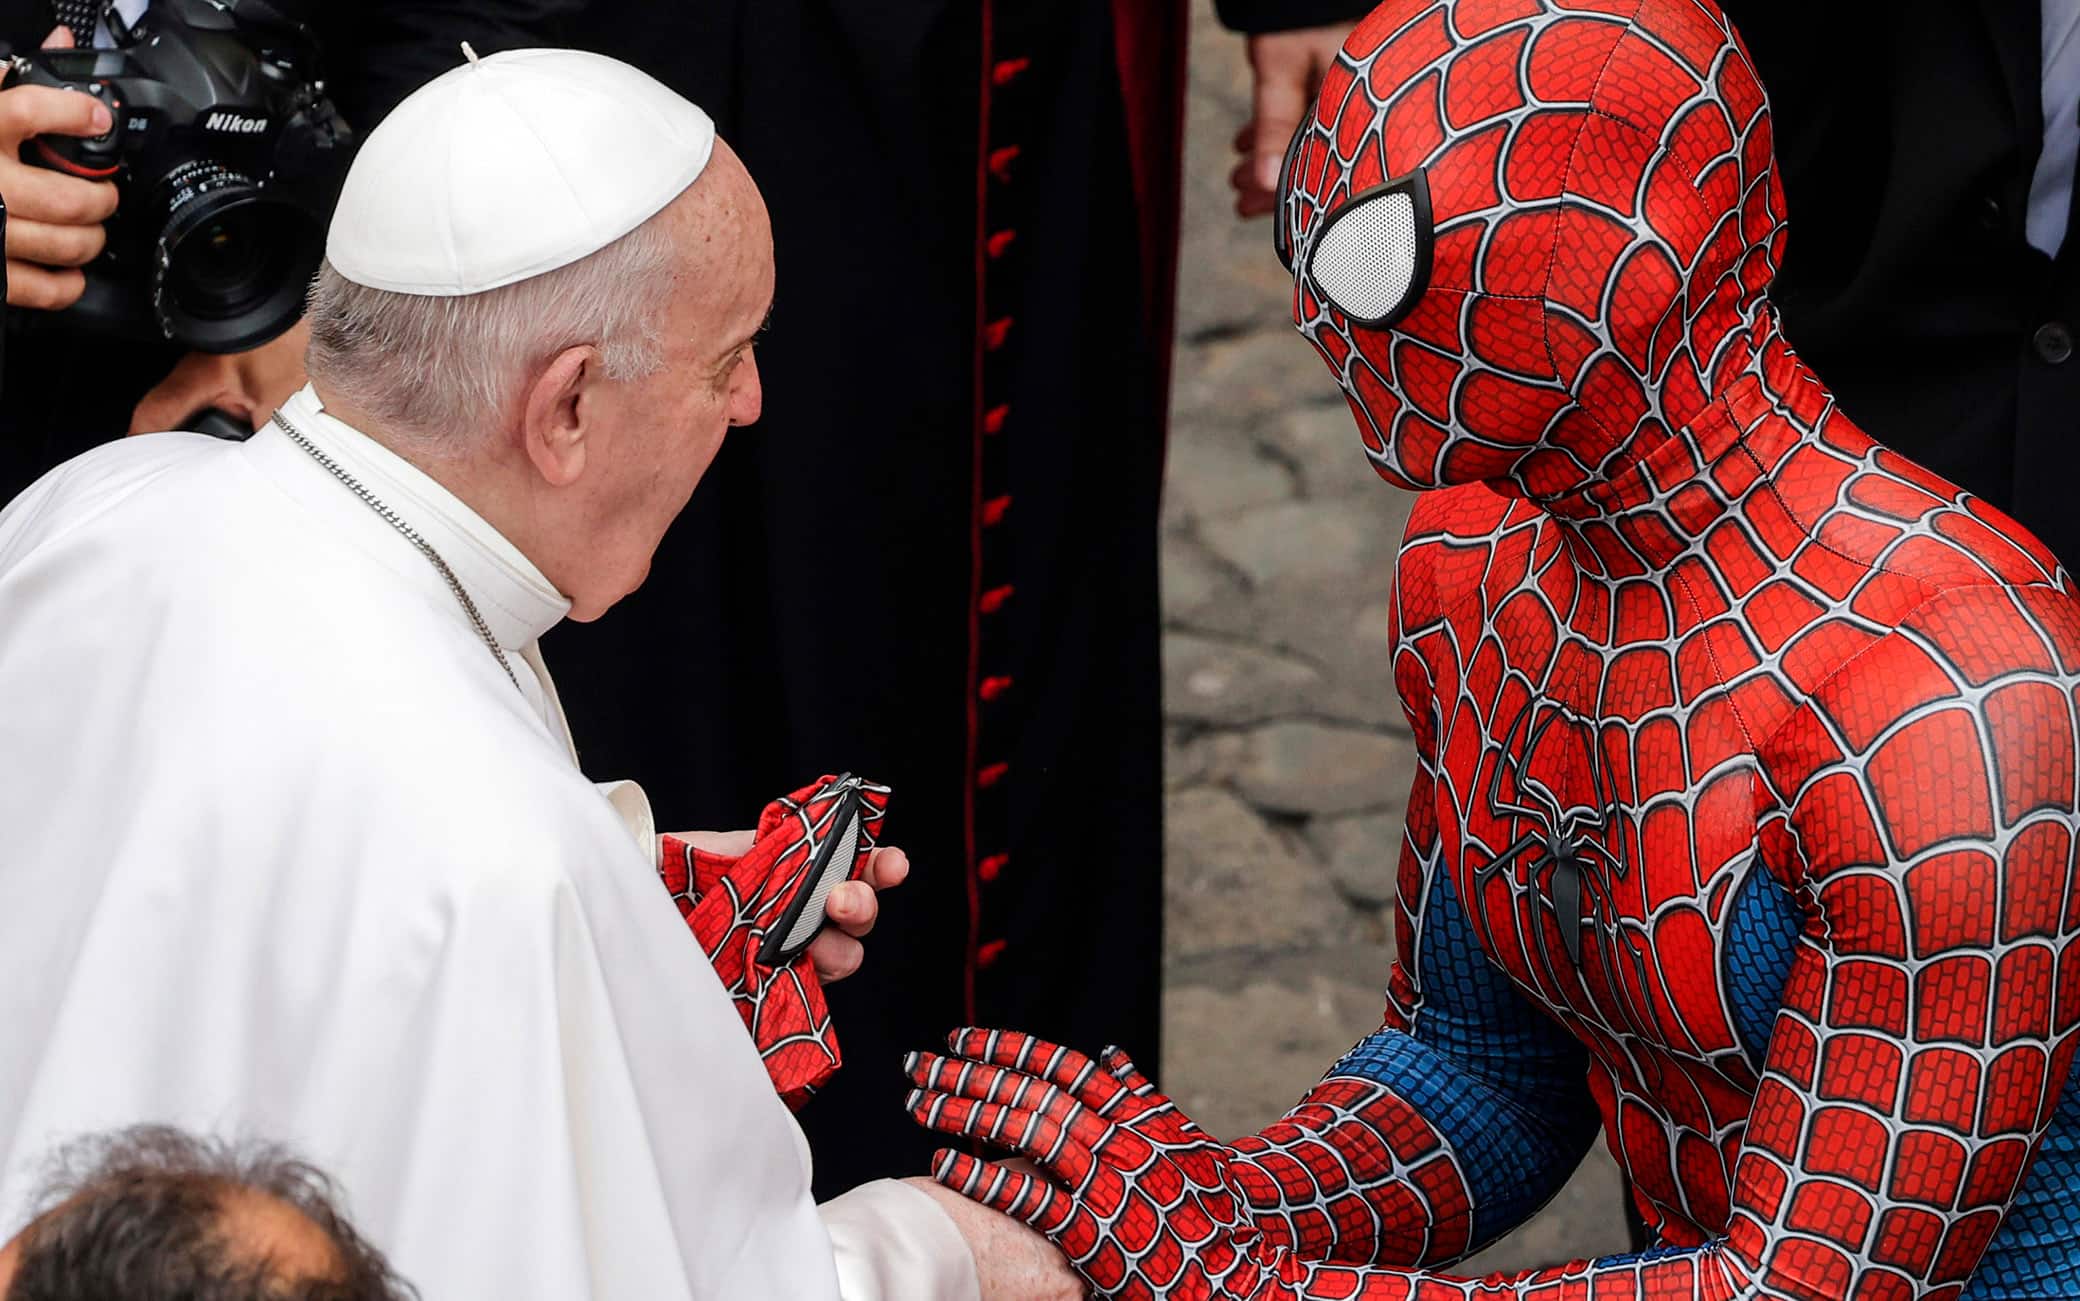 Ragazzo vestito da Spider-Man all'Udienza del Papa in Vaticano